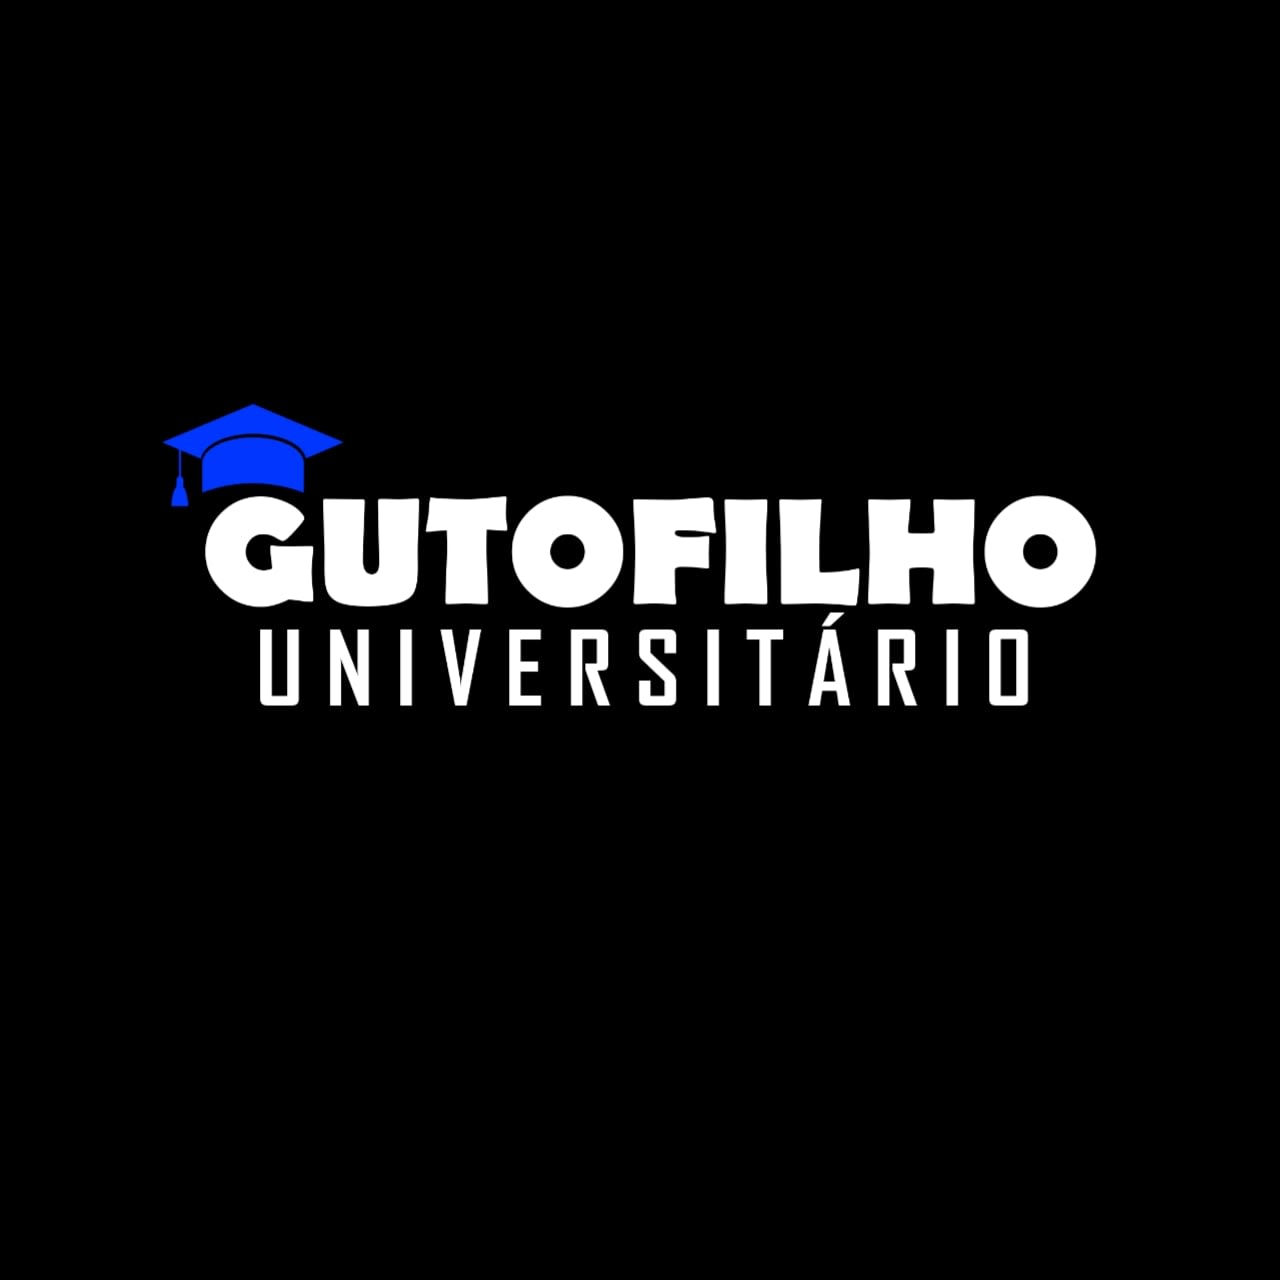 Guto Filho Universitário